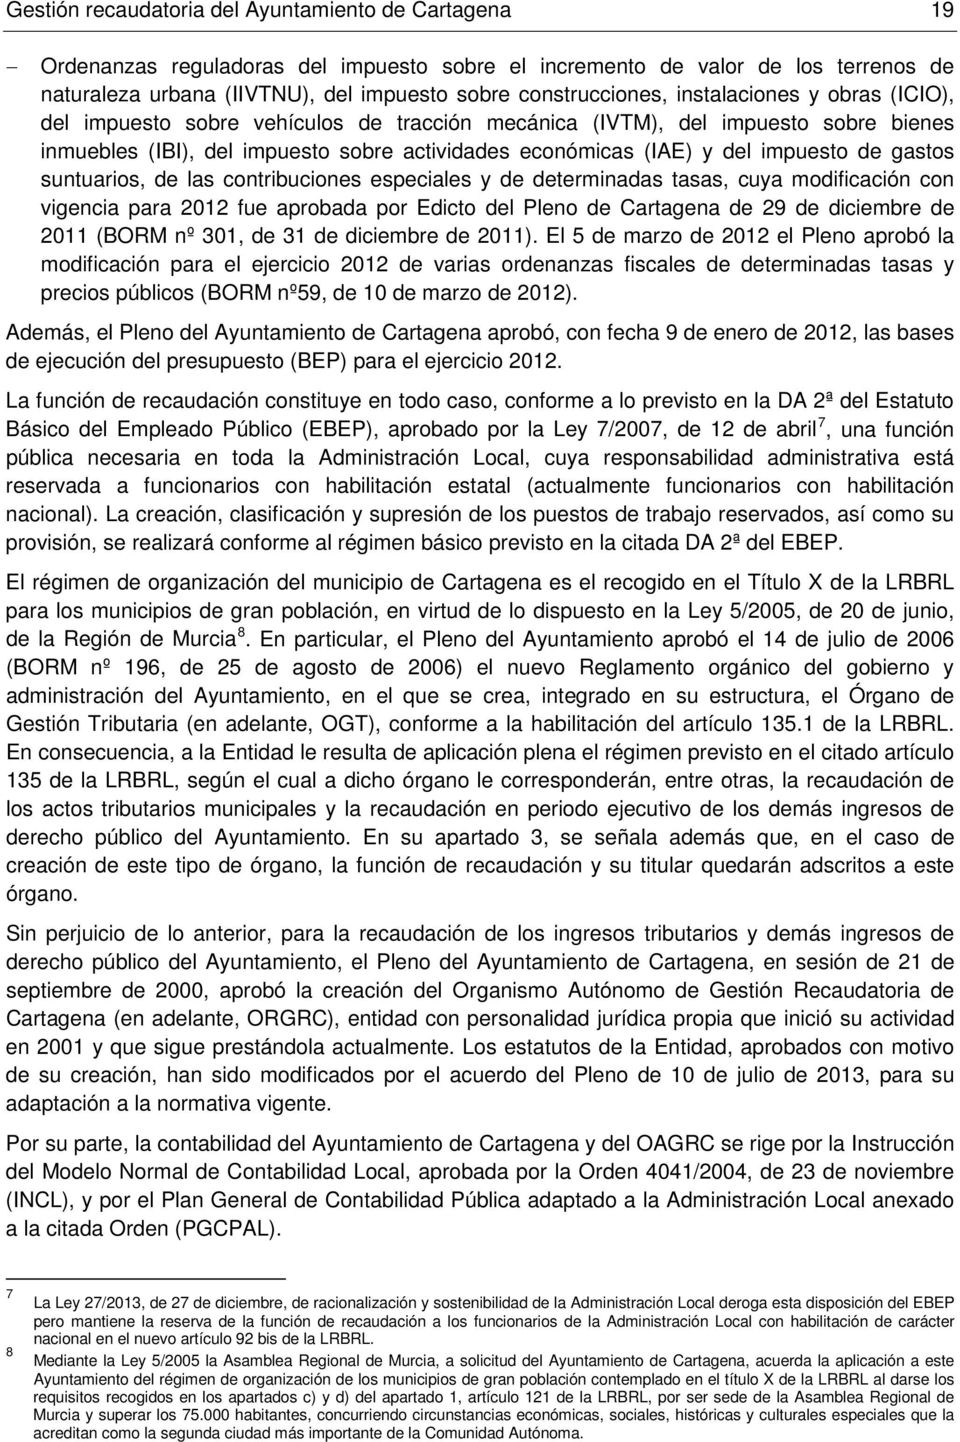 del impuesto de gastos suntuarios, de las contribuciones especiales y de determinadas tasas, cuya modificación con vigencia para 2012 fue aprobada por Edicto del Pleno de Cartagena de 29 de diciembre